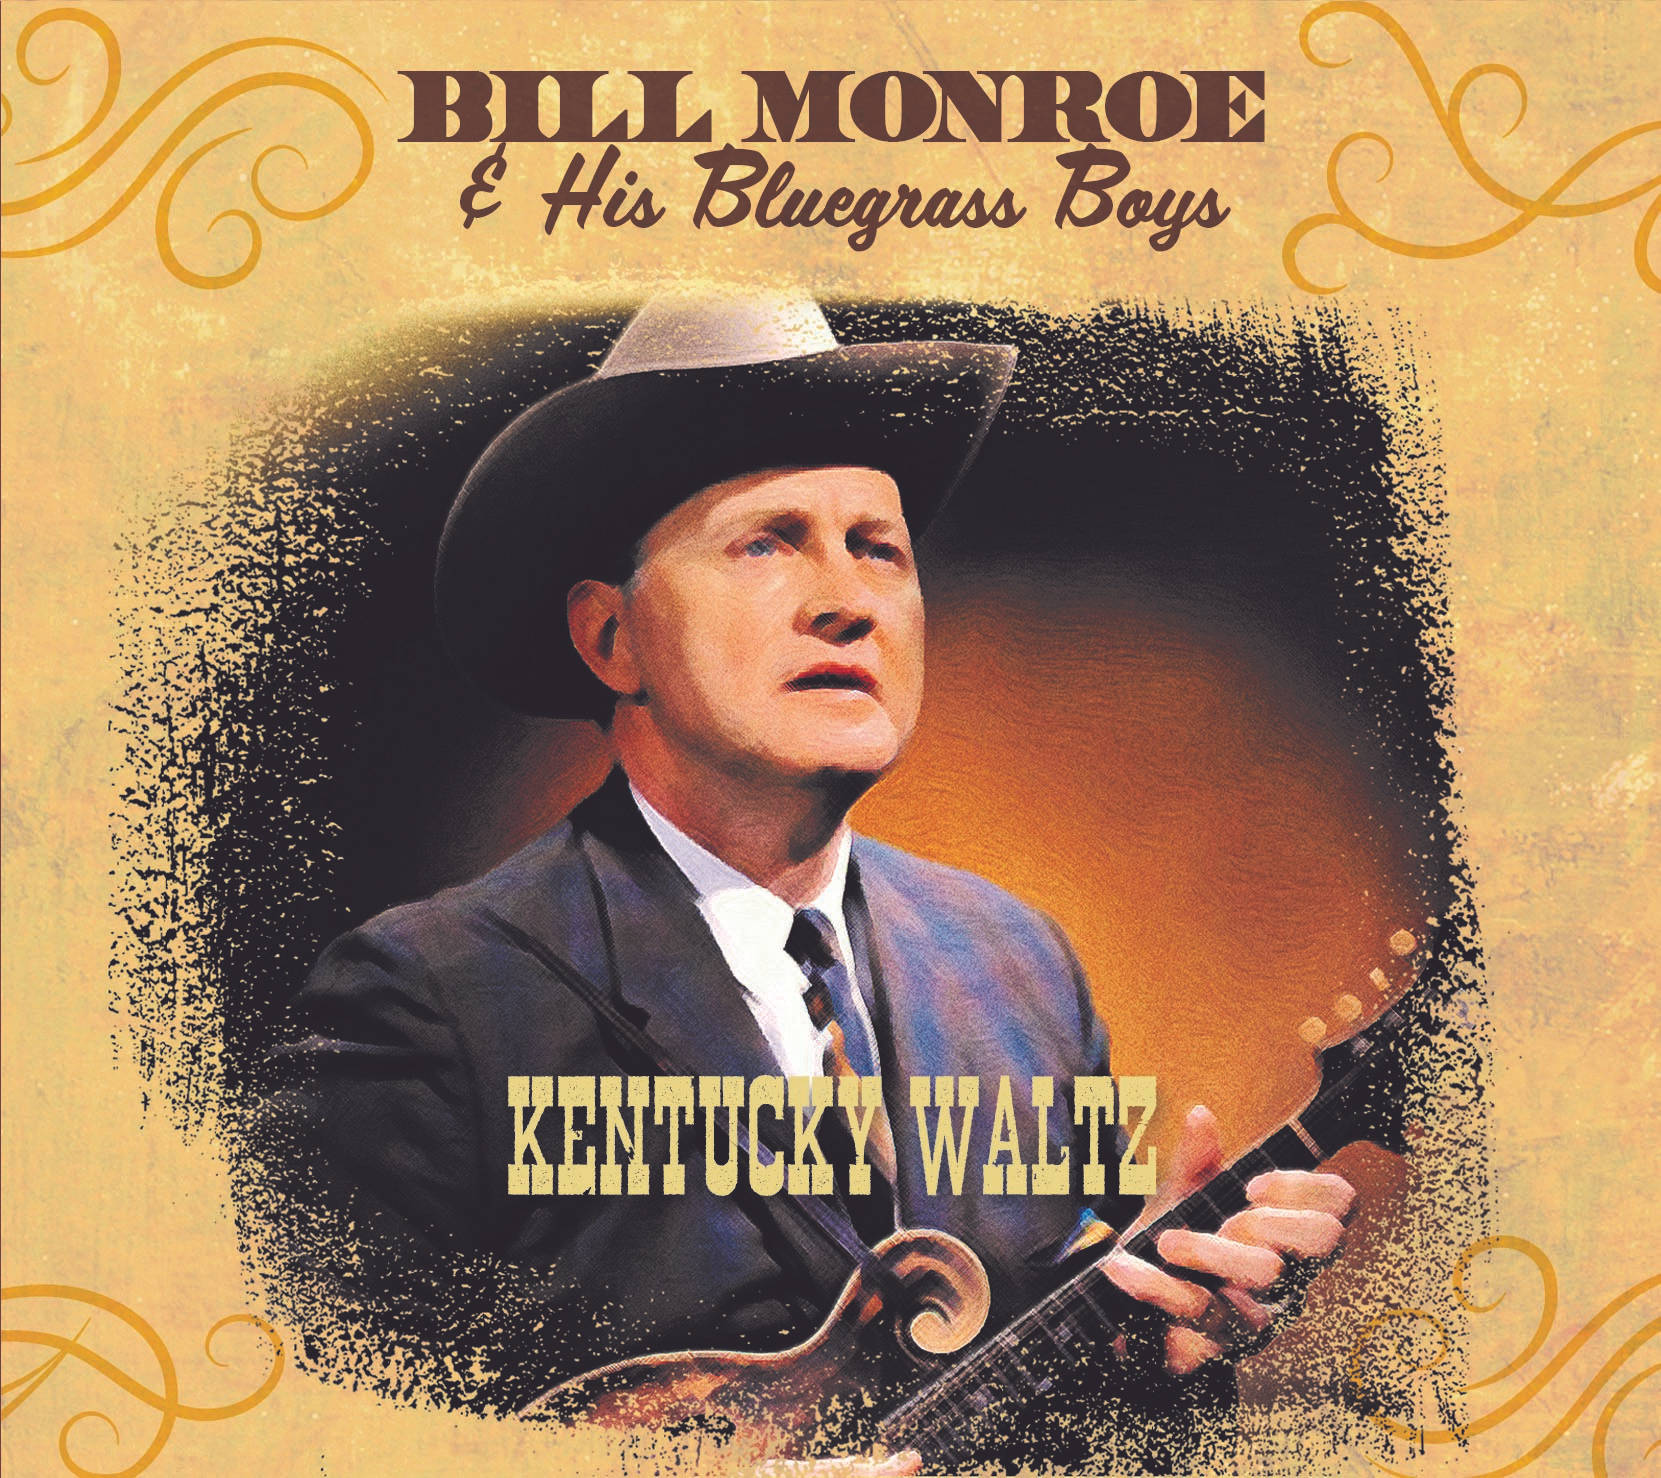 Billmonroe E I Suoi Bluegrass Boys, Album Di Kentucky Waltz. Sfondo